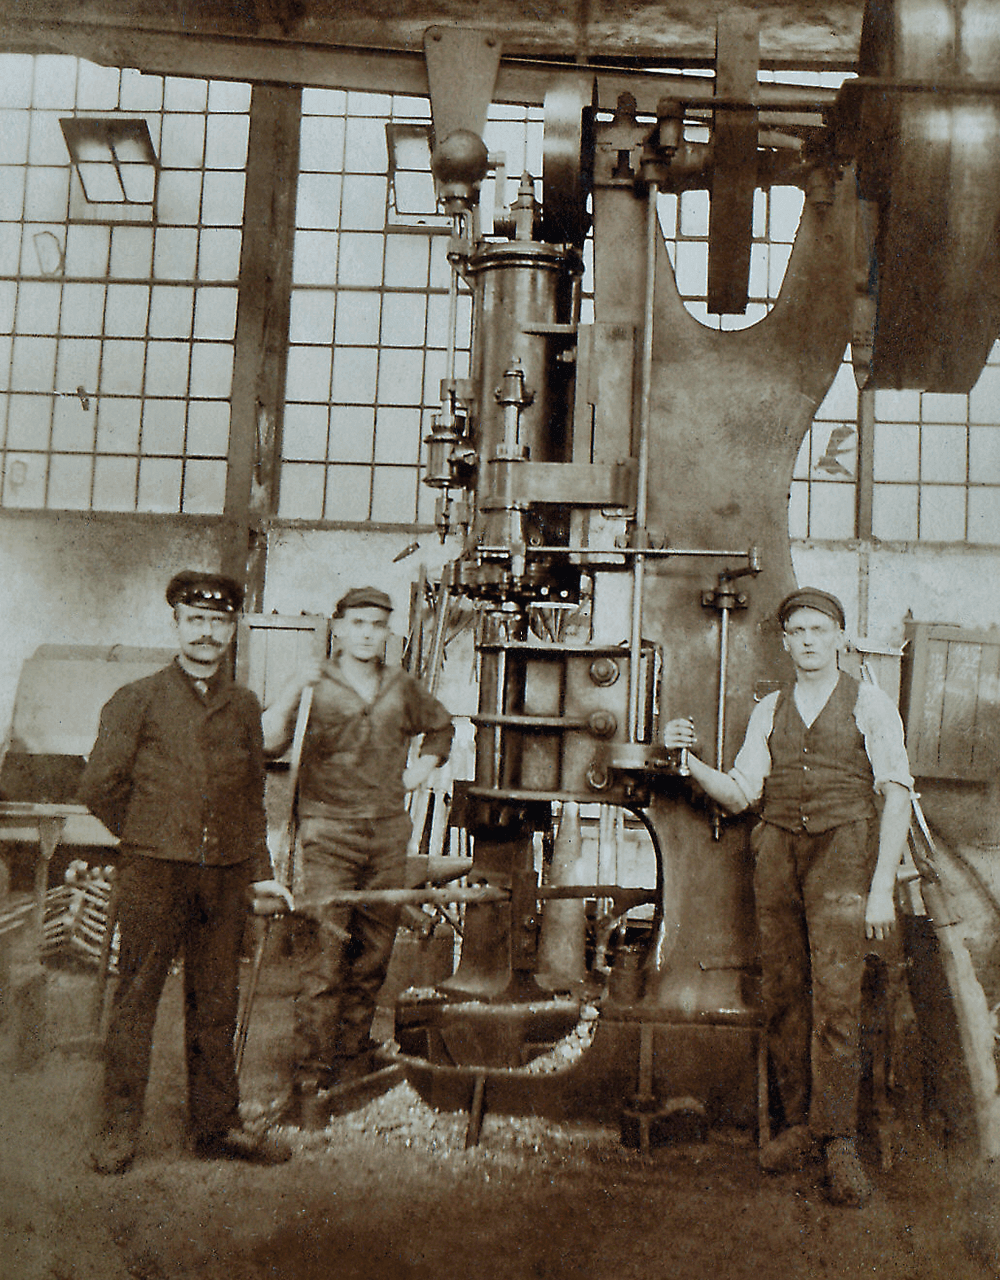 三名 AERZEN 员工站在 AERZEN 装置前的老照片